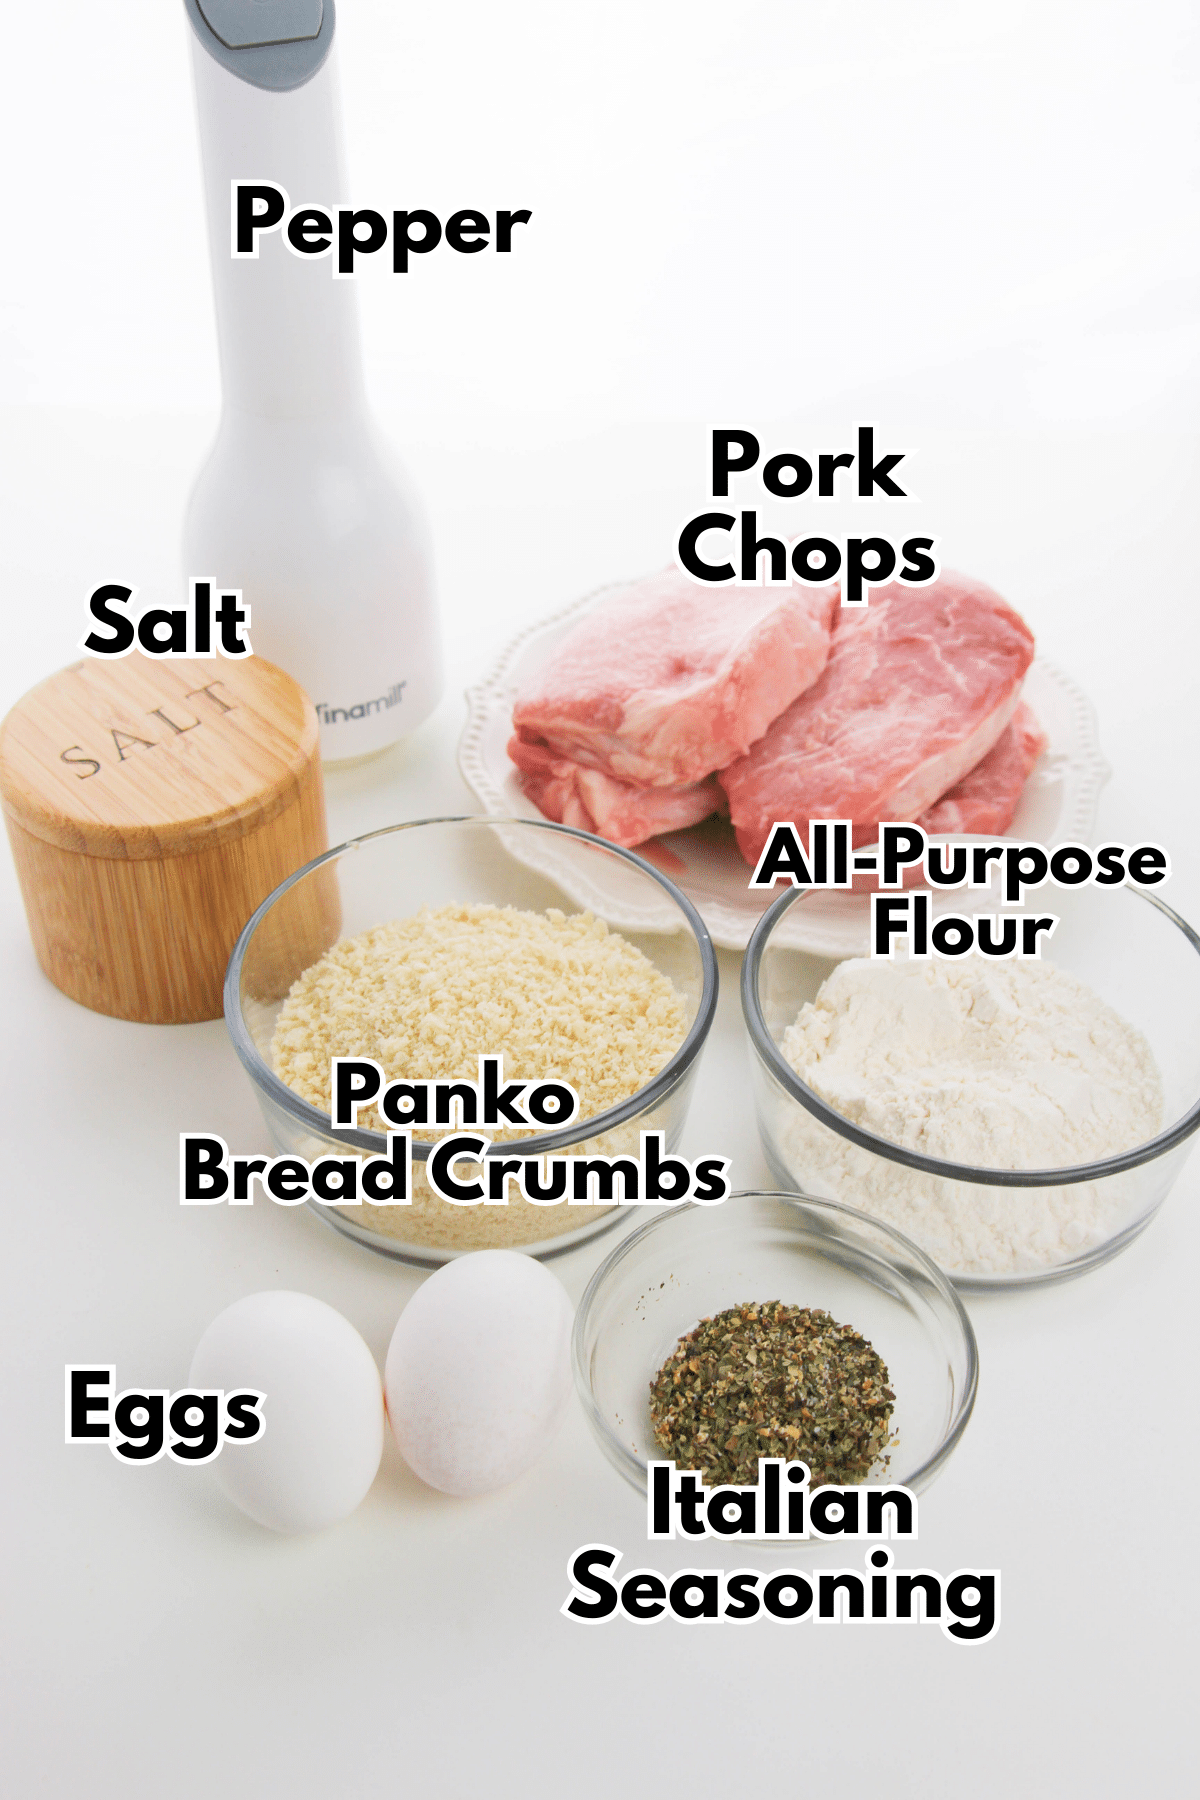 Ingredients for baking Panko pork chops.